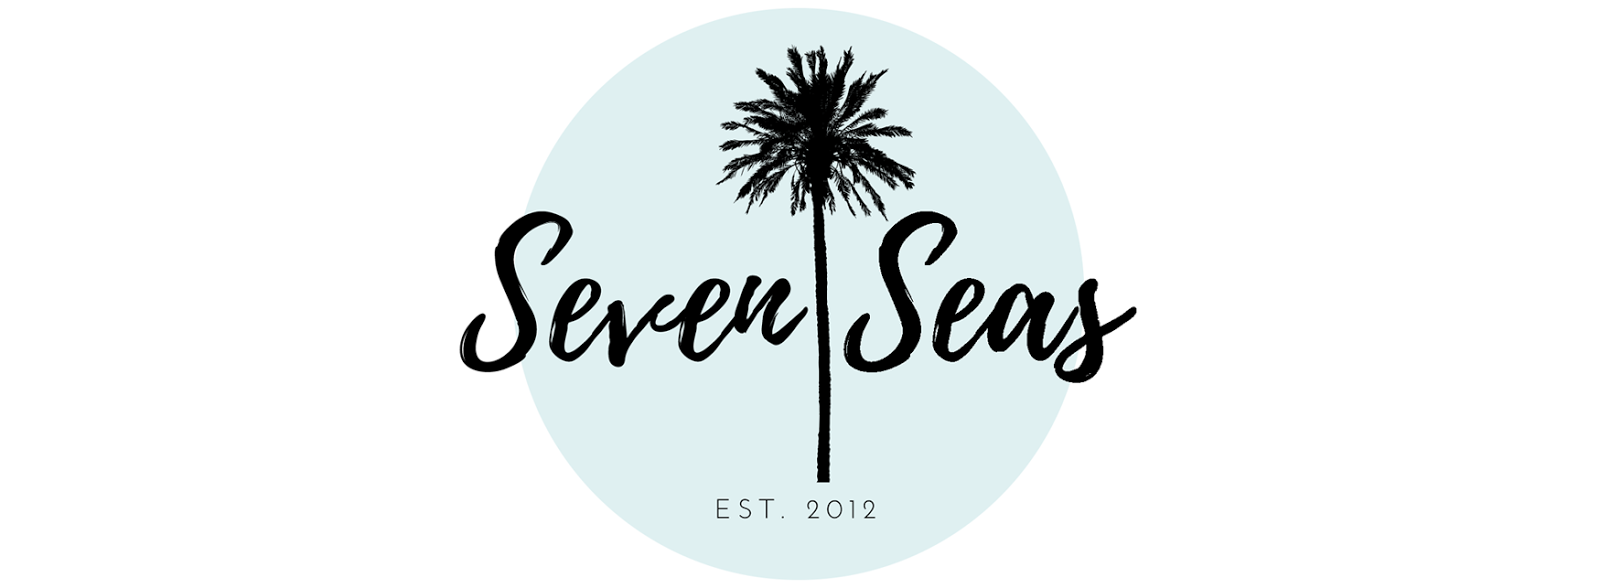 Seven Seas -blogi